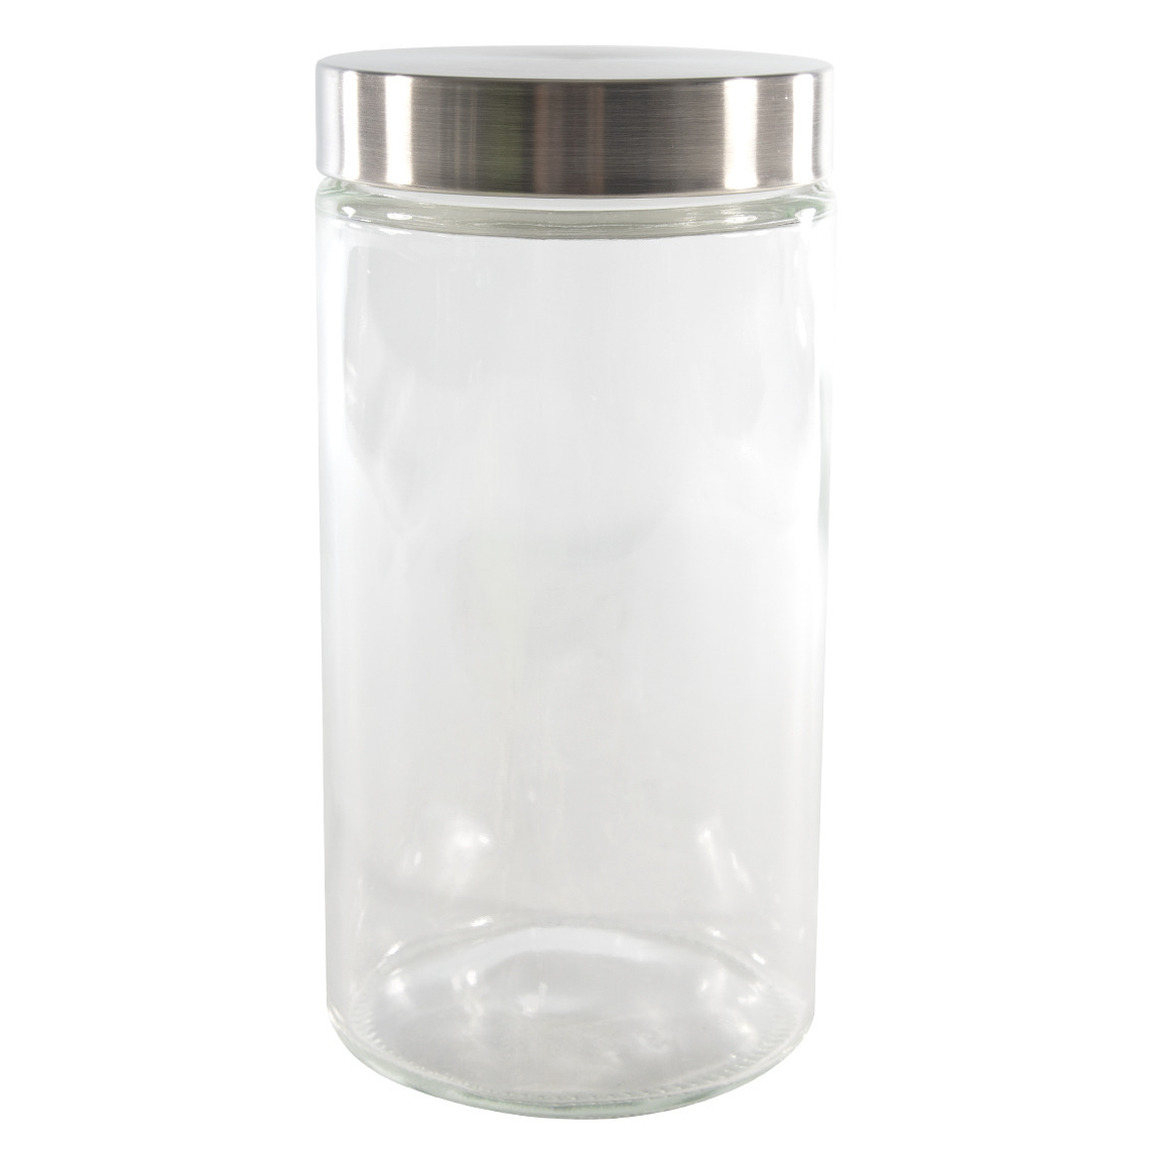 Voorraadpot-bewaarpot 1700 ml glas met RVS deksel